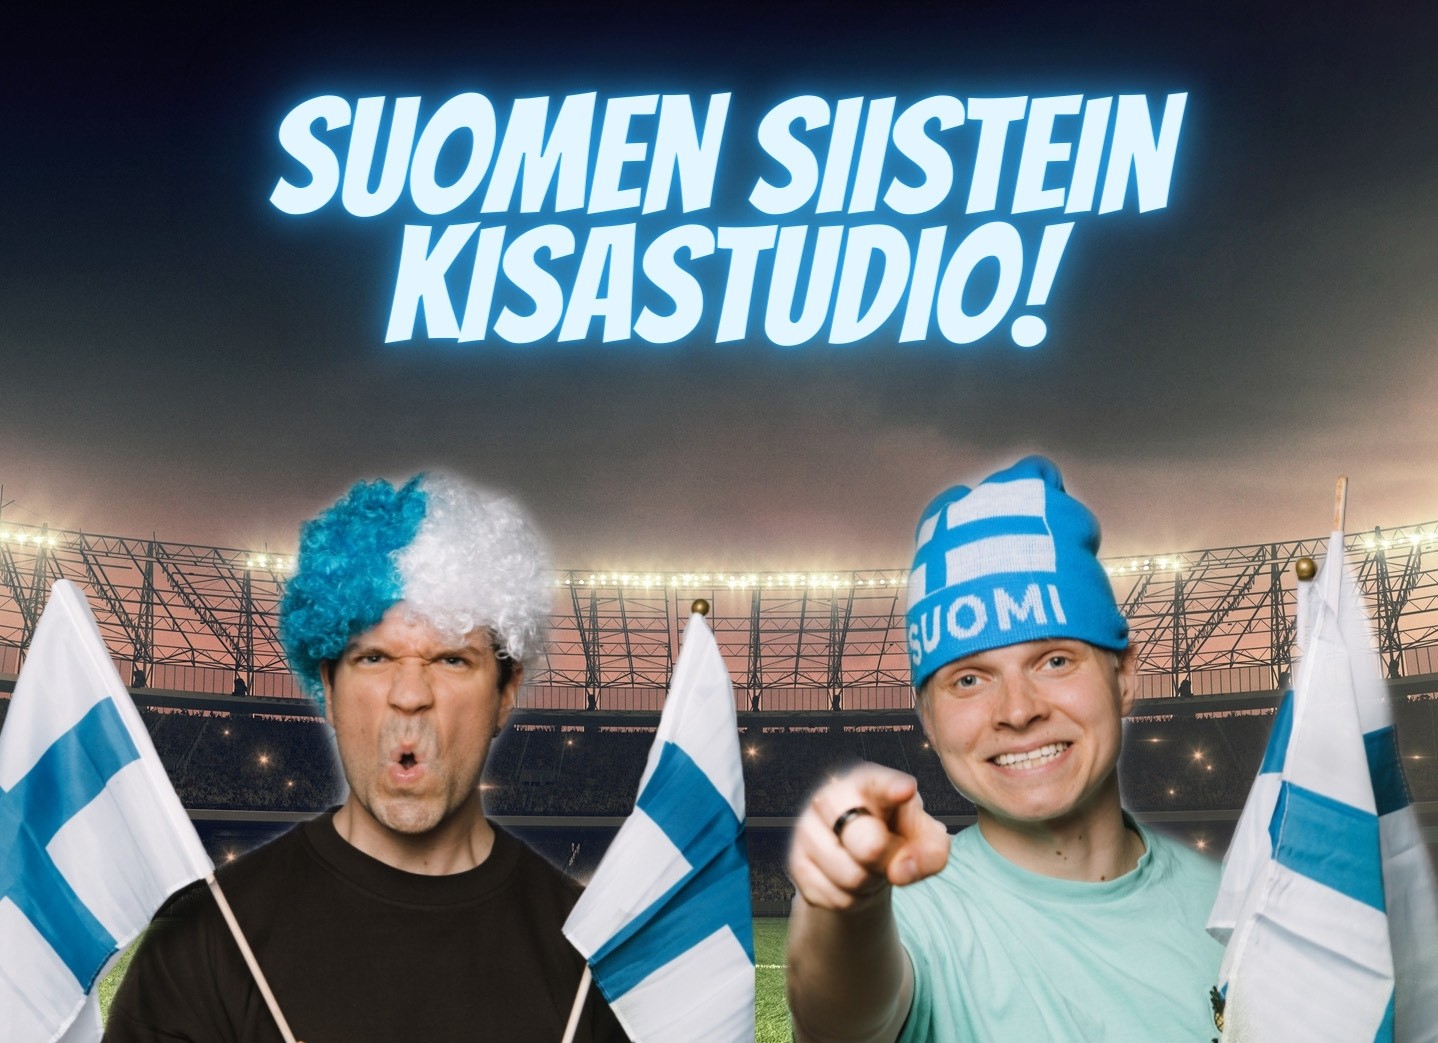 Blokess etsii Suomen siisteintä kisastudiota uudessa YouTube-sarjassaan, jonka ensimmäinen video tulee julki arviolta 15. kesäkuuta.